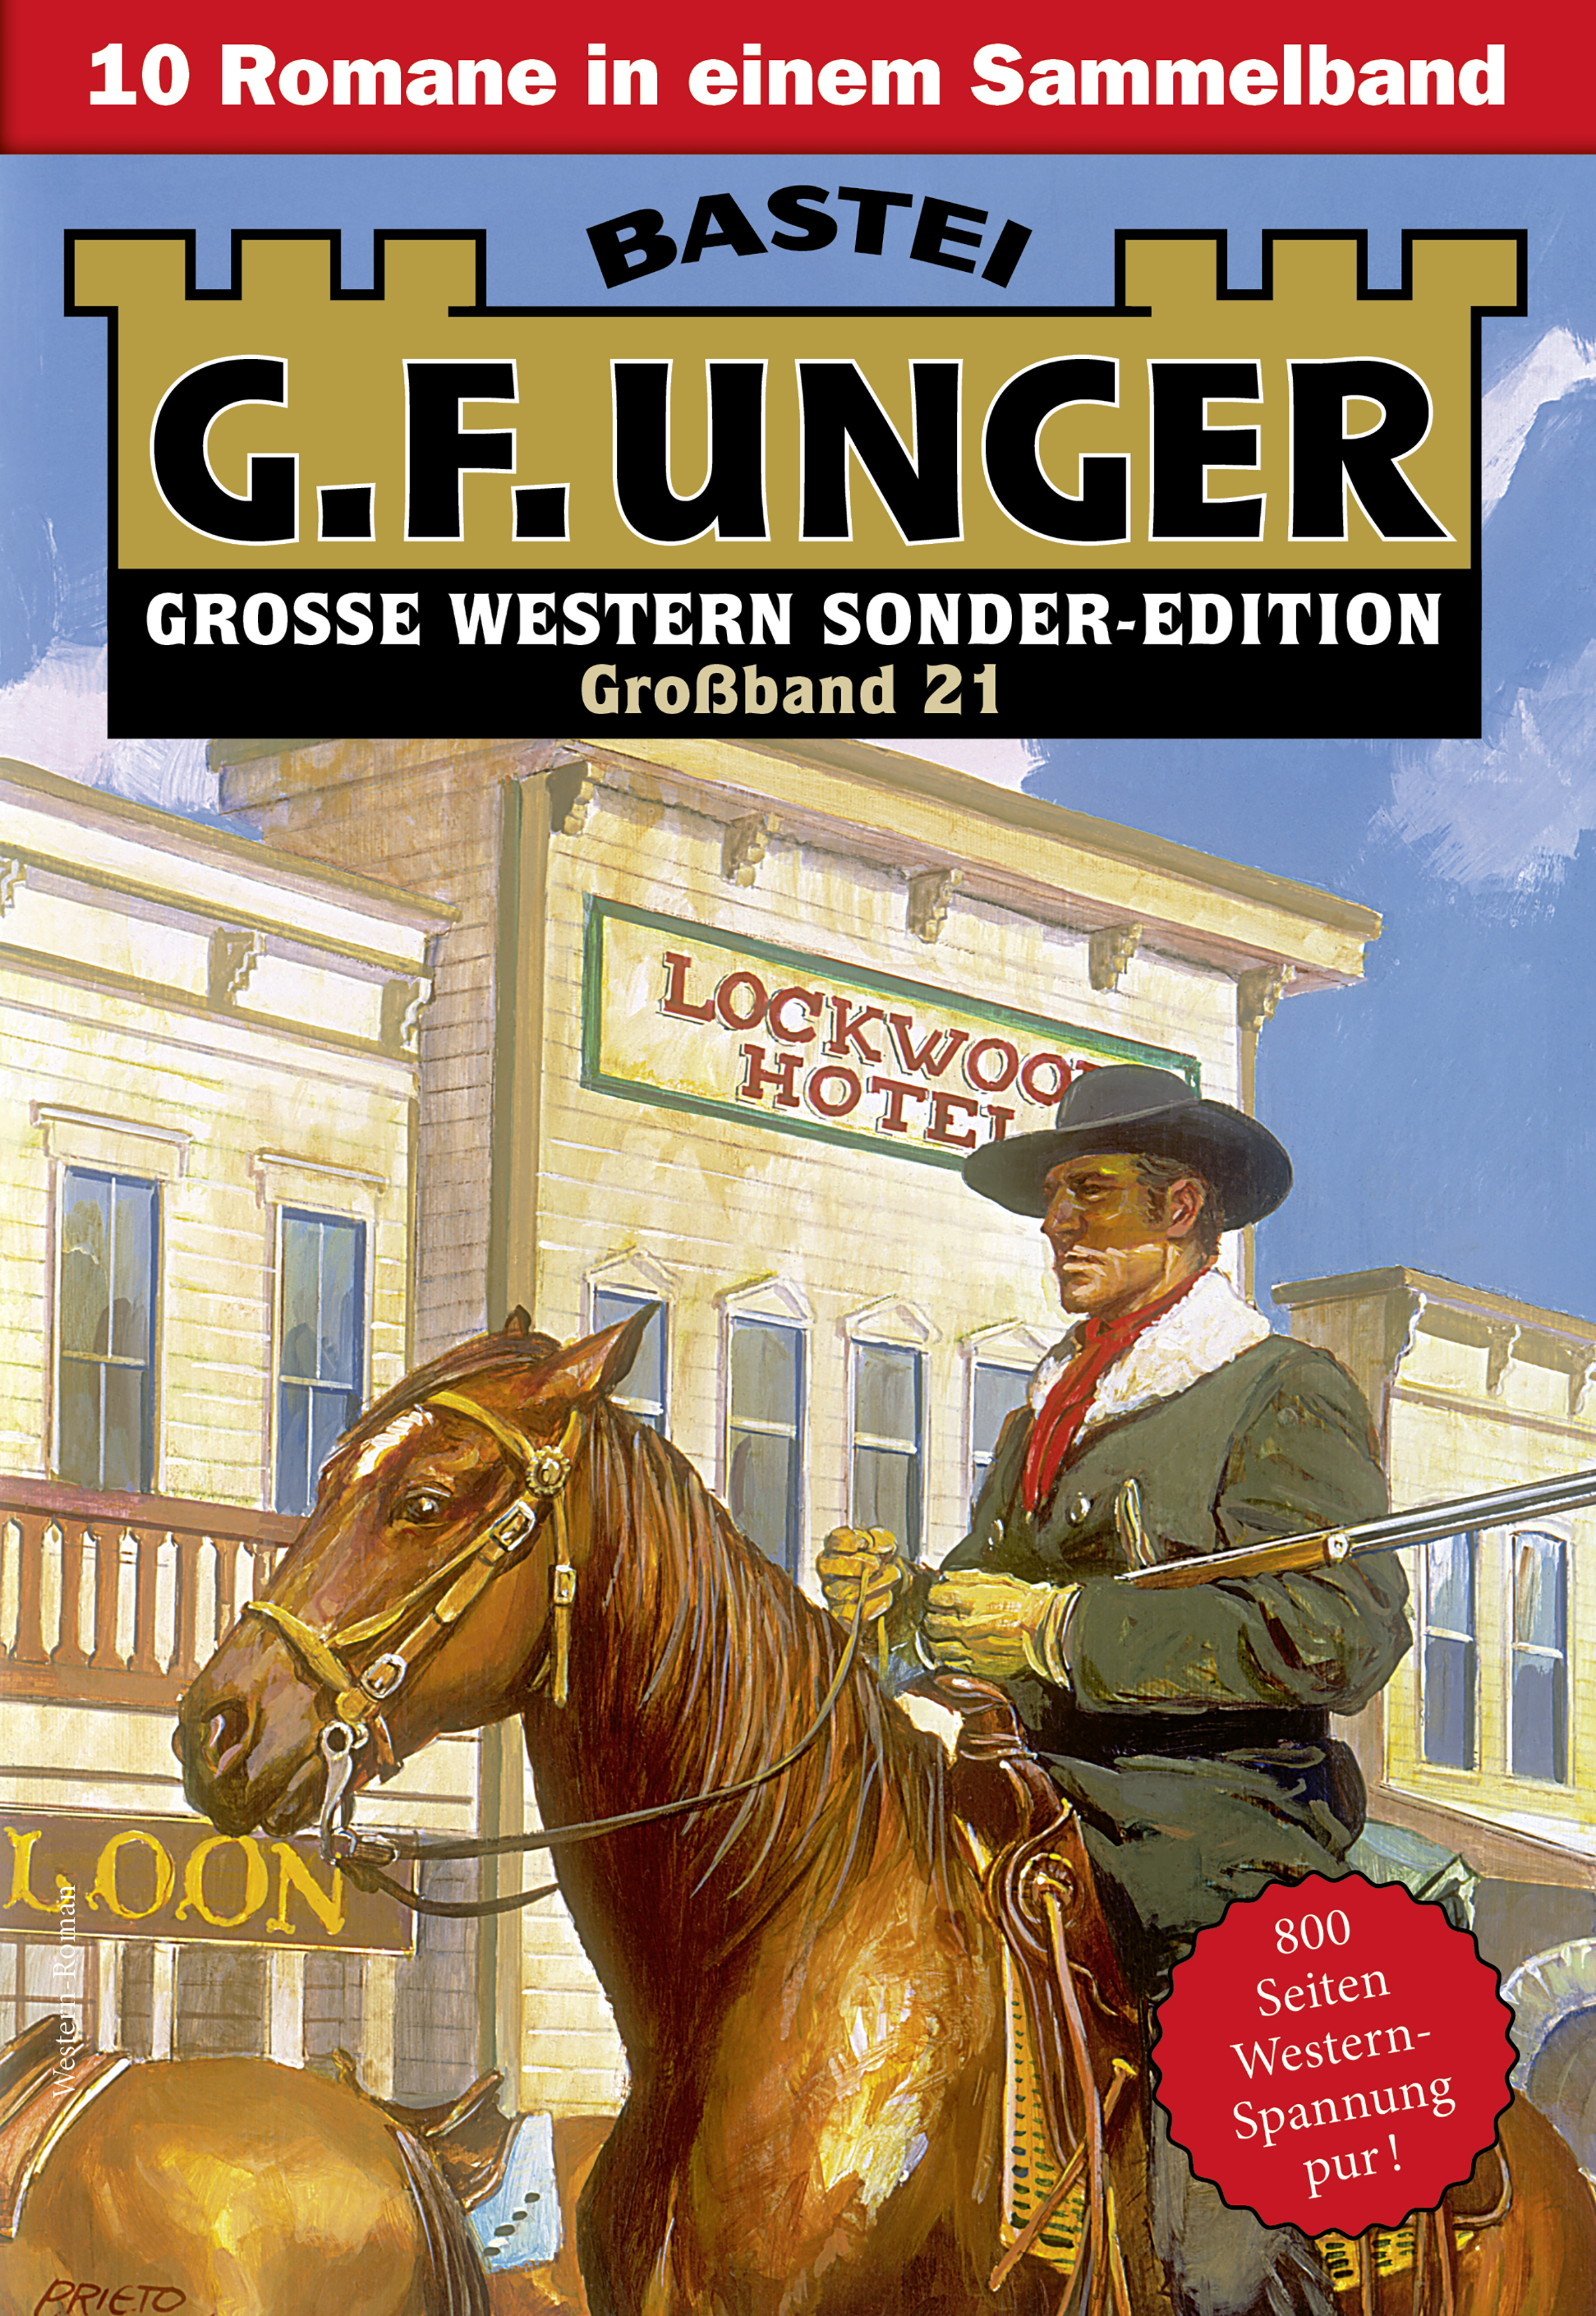 G. F. Unger Sonder-Edition Großband